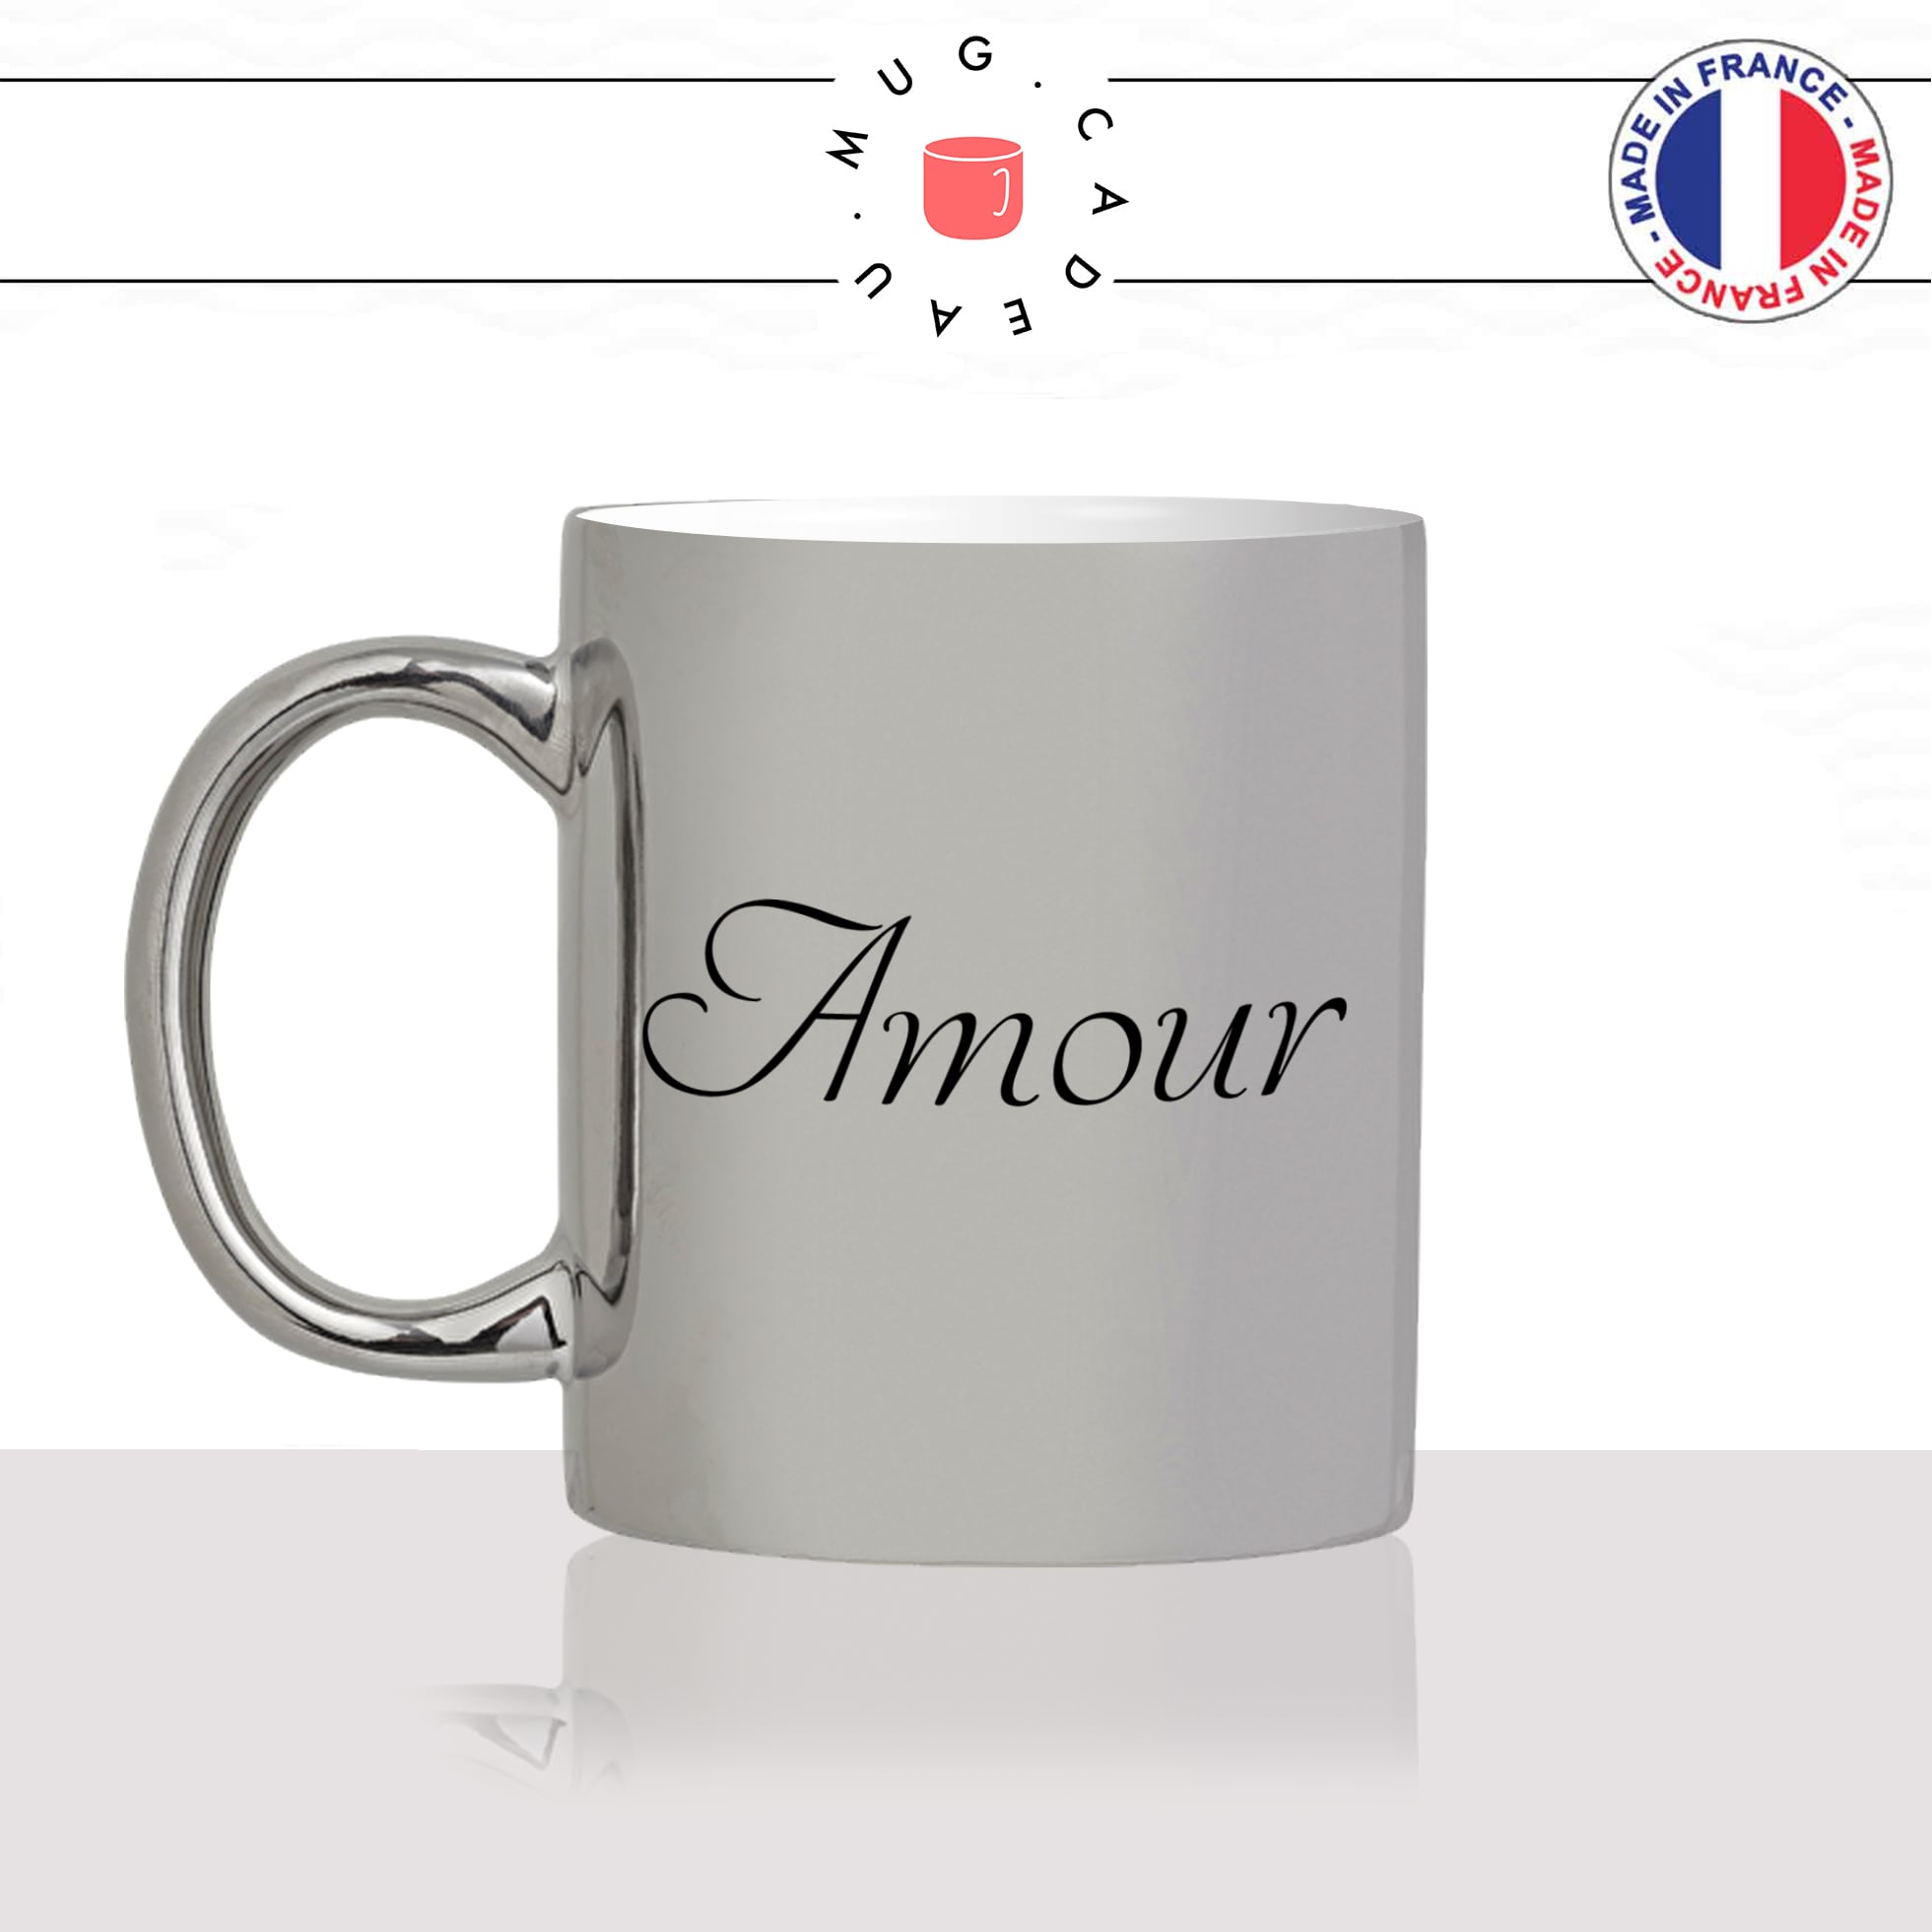 mug-tasse-argent-argenté-silver-mot-lettrine-calligraphie-couple-st-valentin-je-taime-amour-couple-café-thé-idée-cadeau-original-personnalisé-min